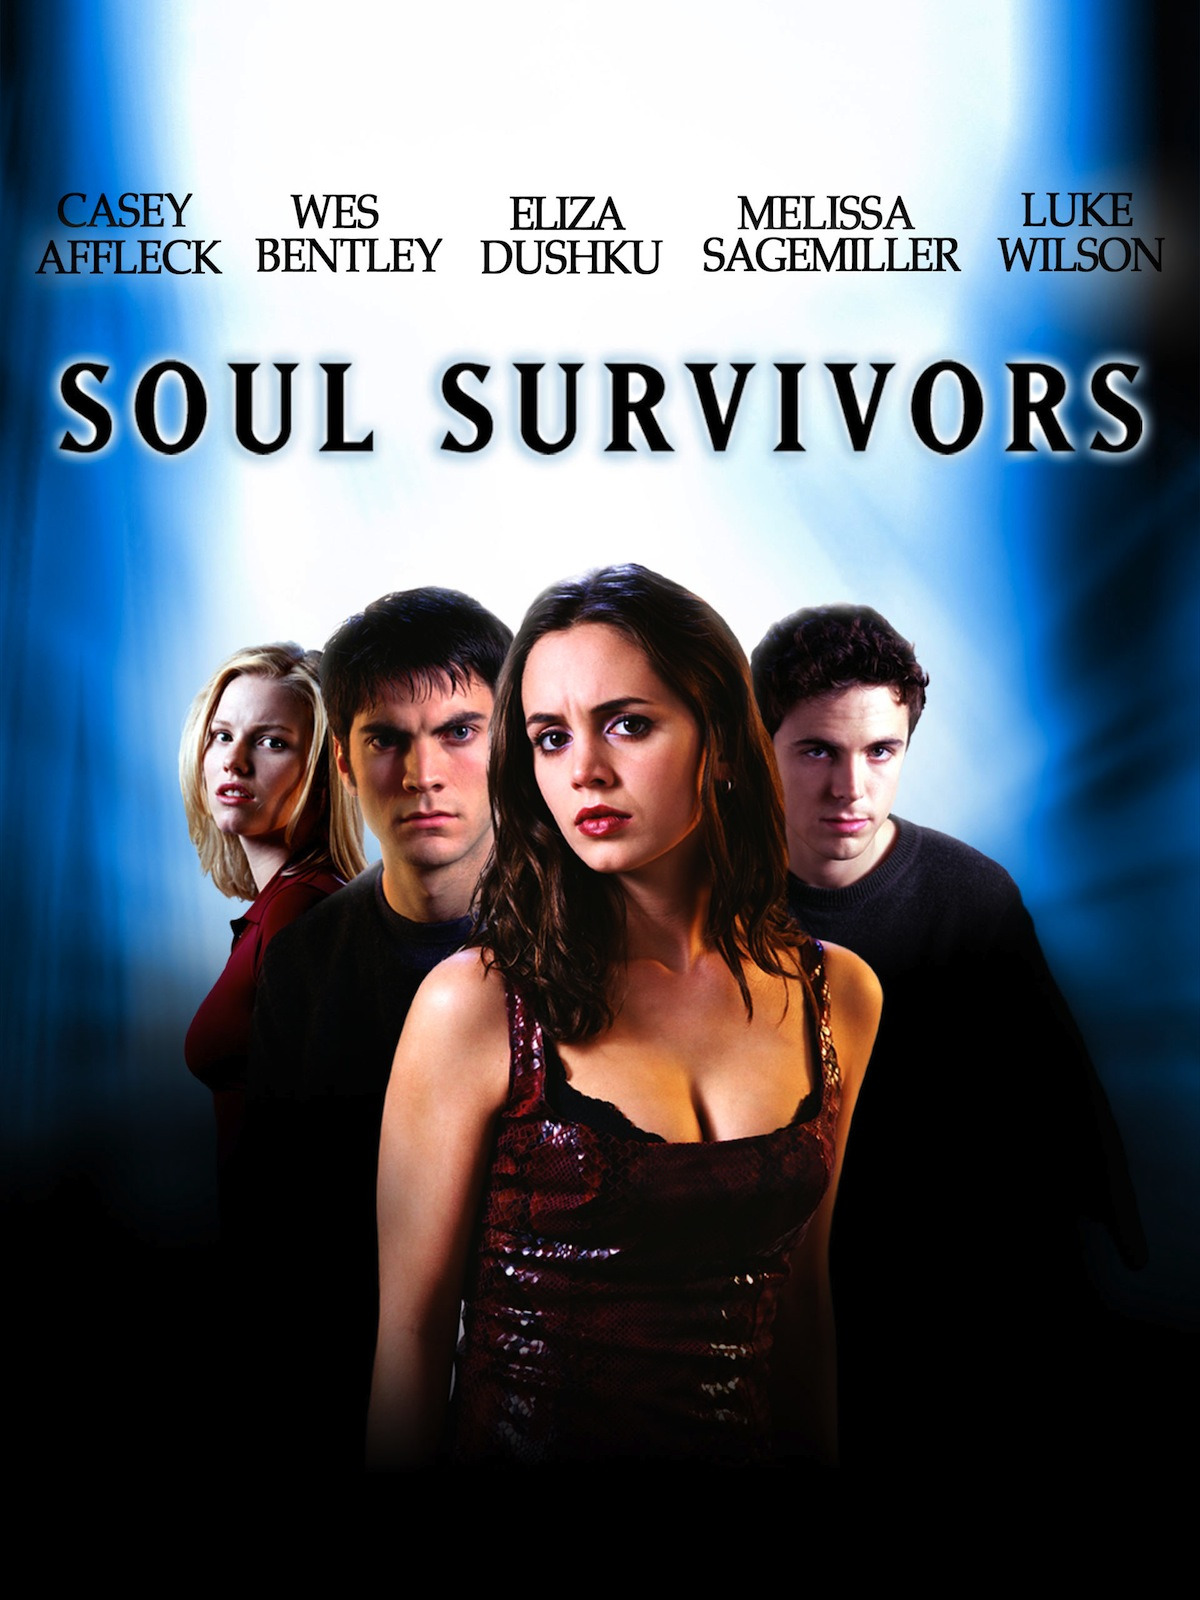 Бессмертные души 2001. Soul Survivors 2001. Soul Survivors 2001 poster. Уэс Бентли бессмертные души.